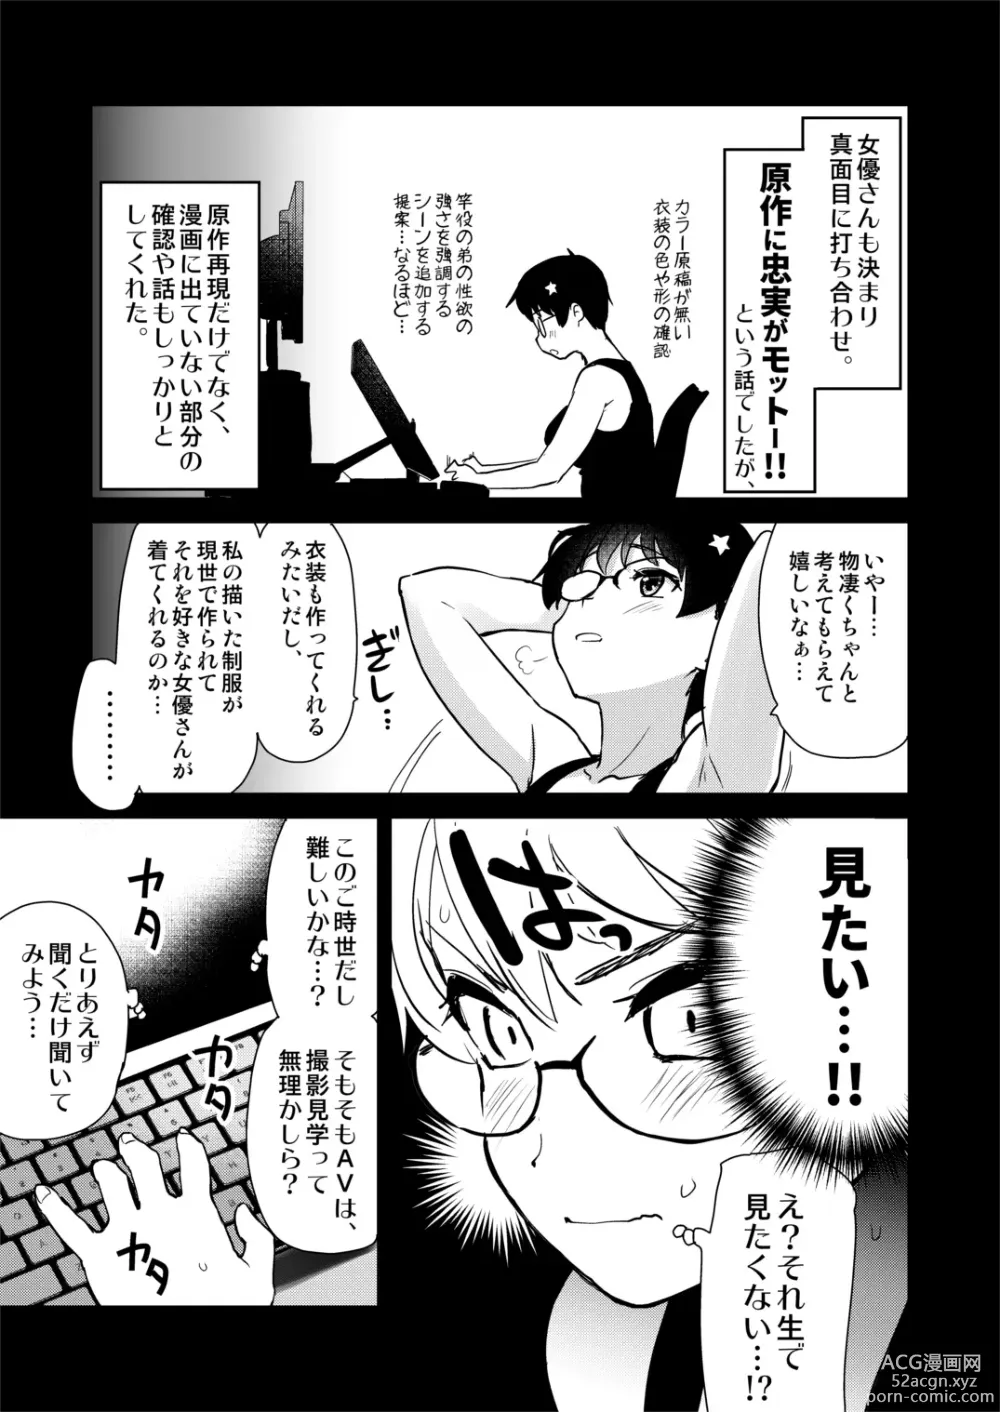 Page 10 of doujinshi Jibun no Kaita Manga ga Jissha AV ni!? Sekkaku nano de Satsuei Genba no Kengaku ni Ittekimashita.